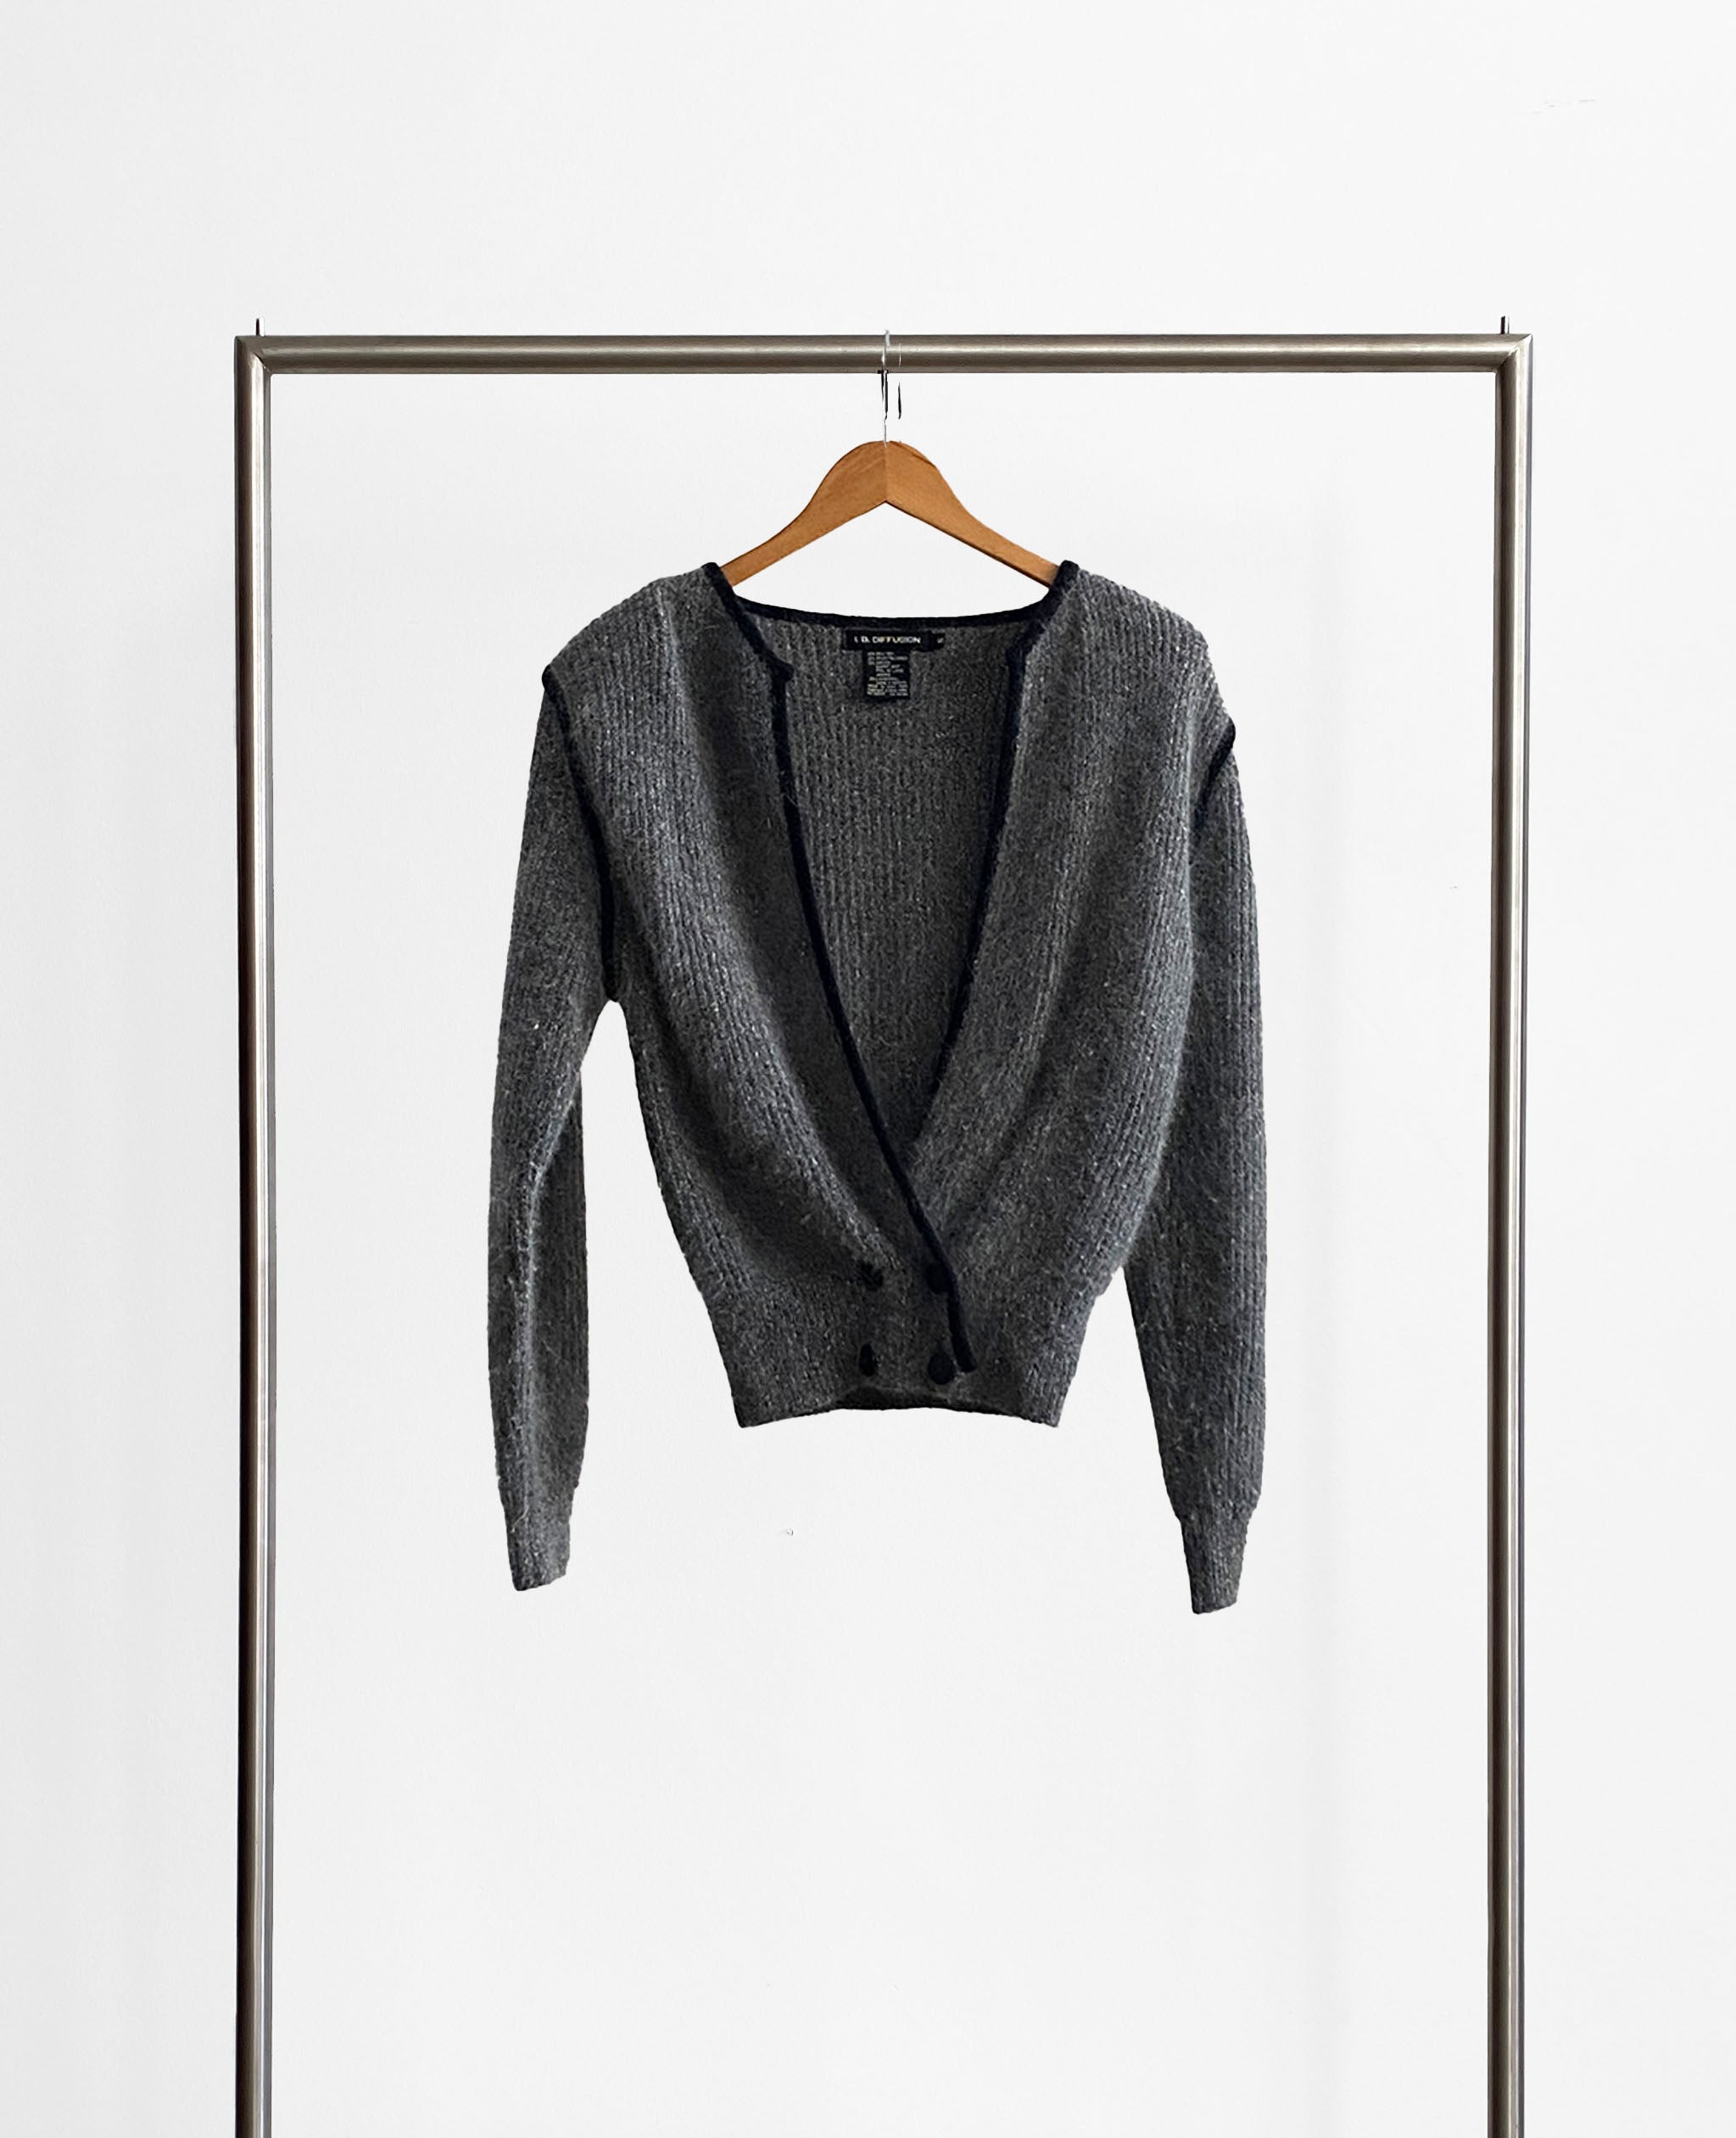 Gray Fuzzy Sweater With Black Trim